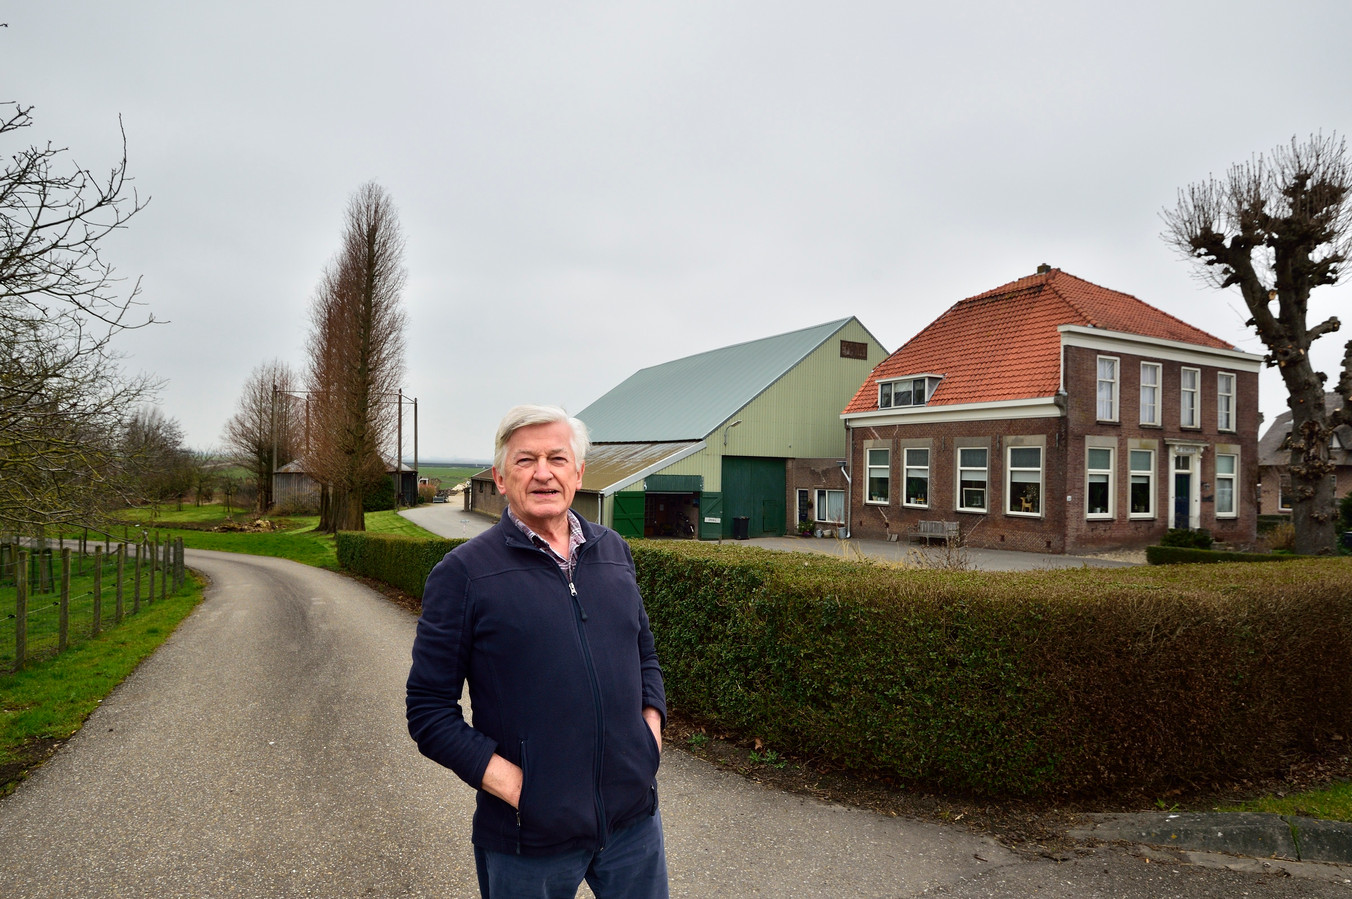 Ontdek Maan katje 170-jarige historische boerderij moet plaats maken voor rotonde, politiek  wil de sloop voorkomen | Foto | AD.nl